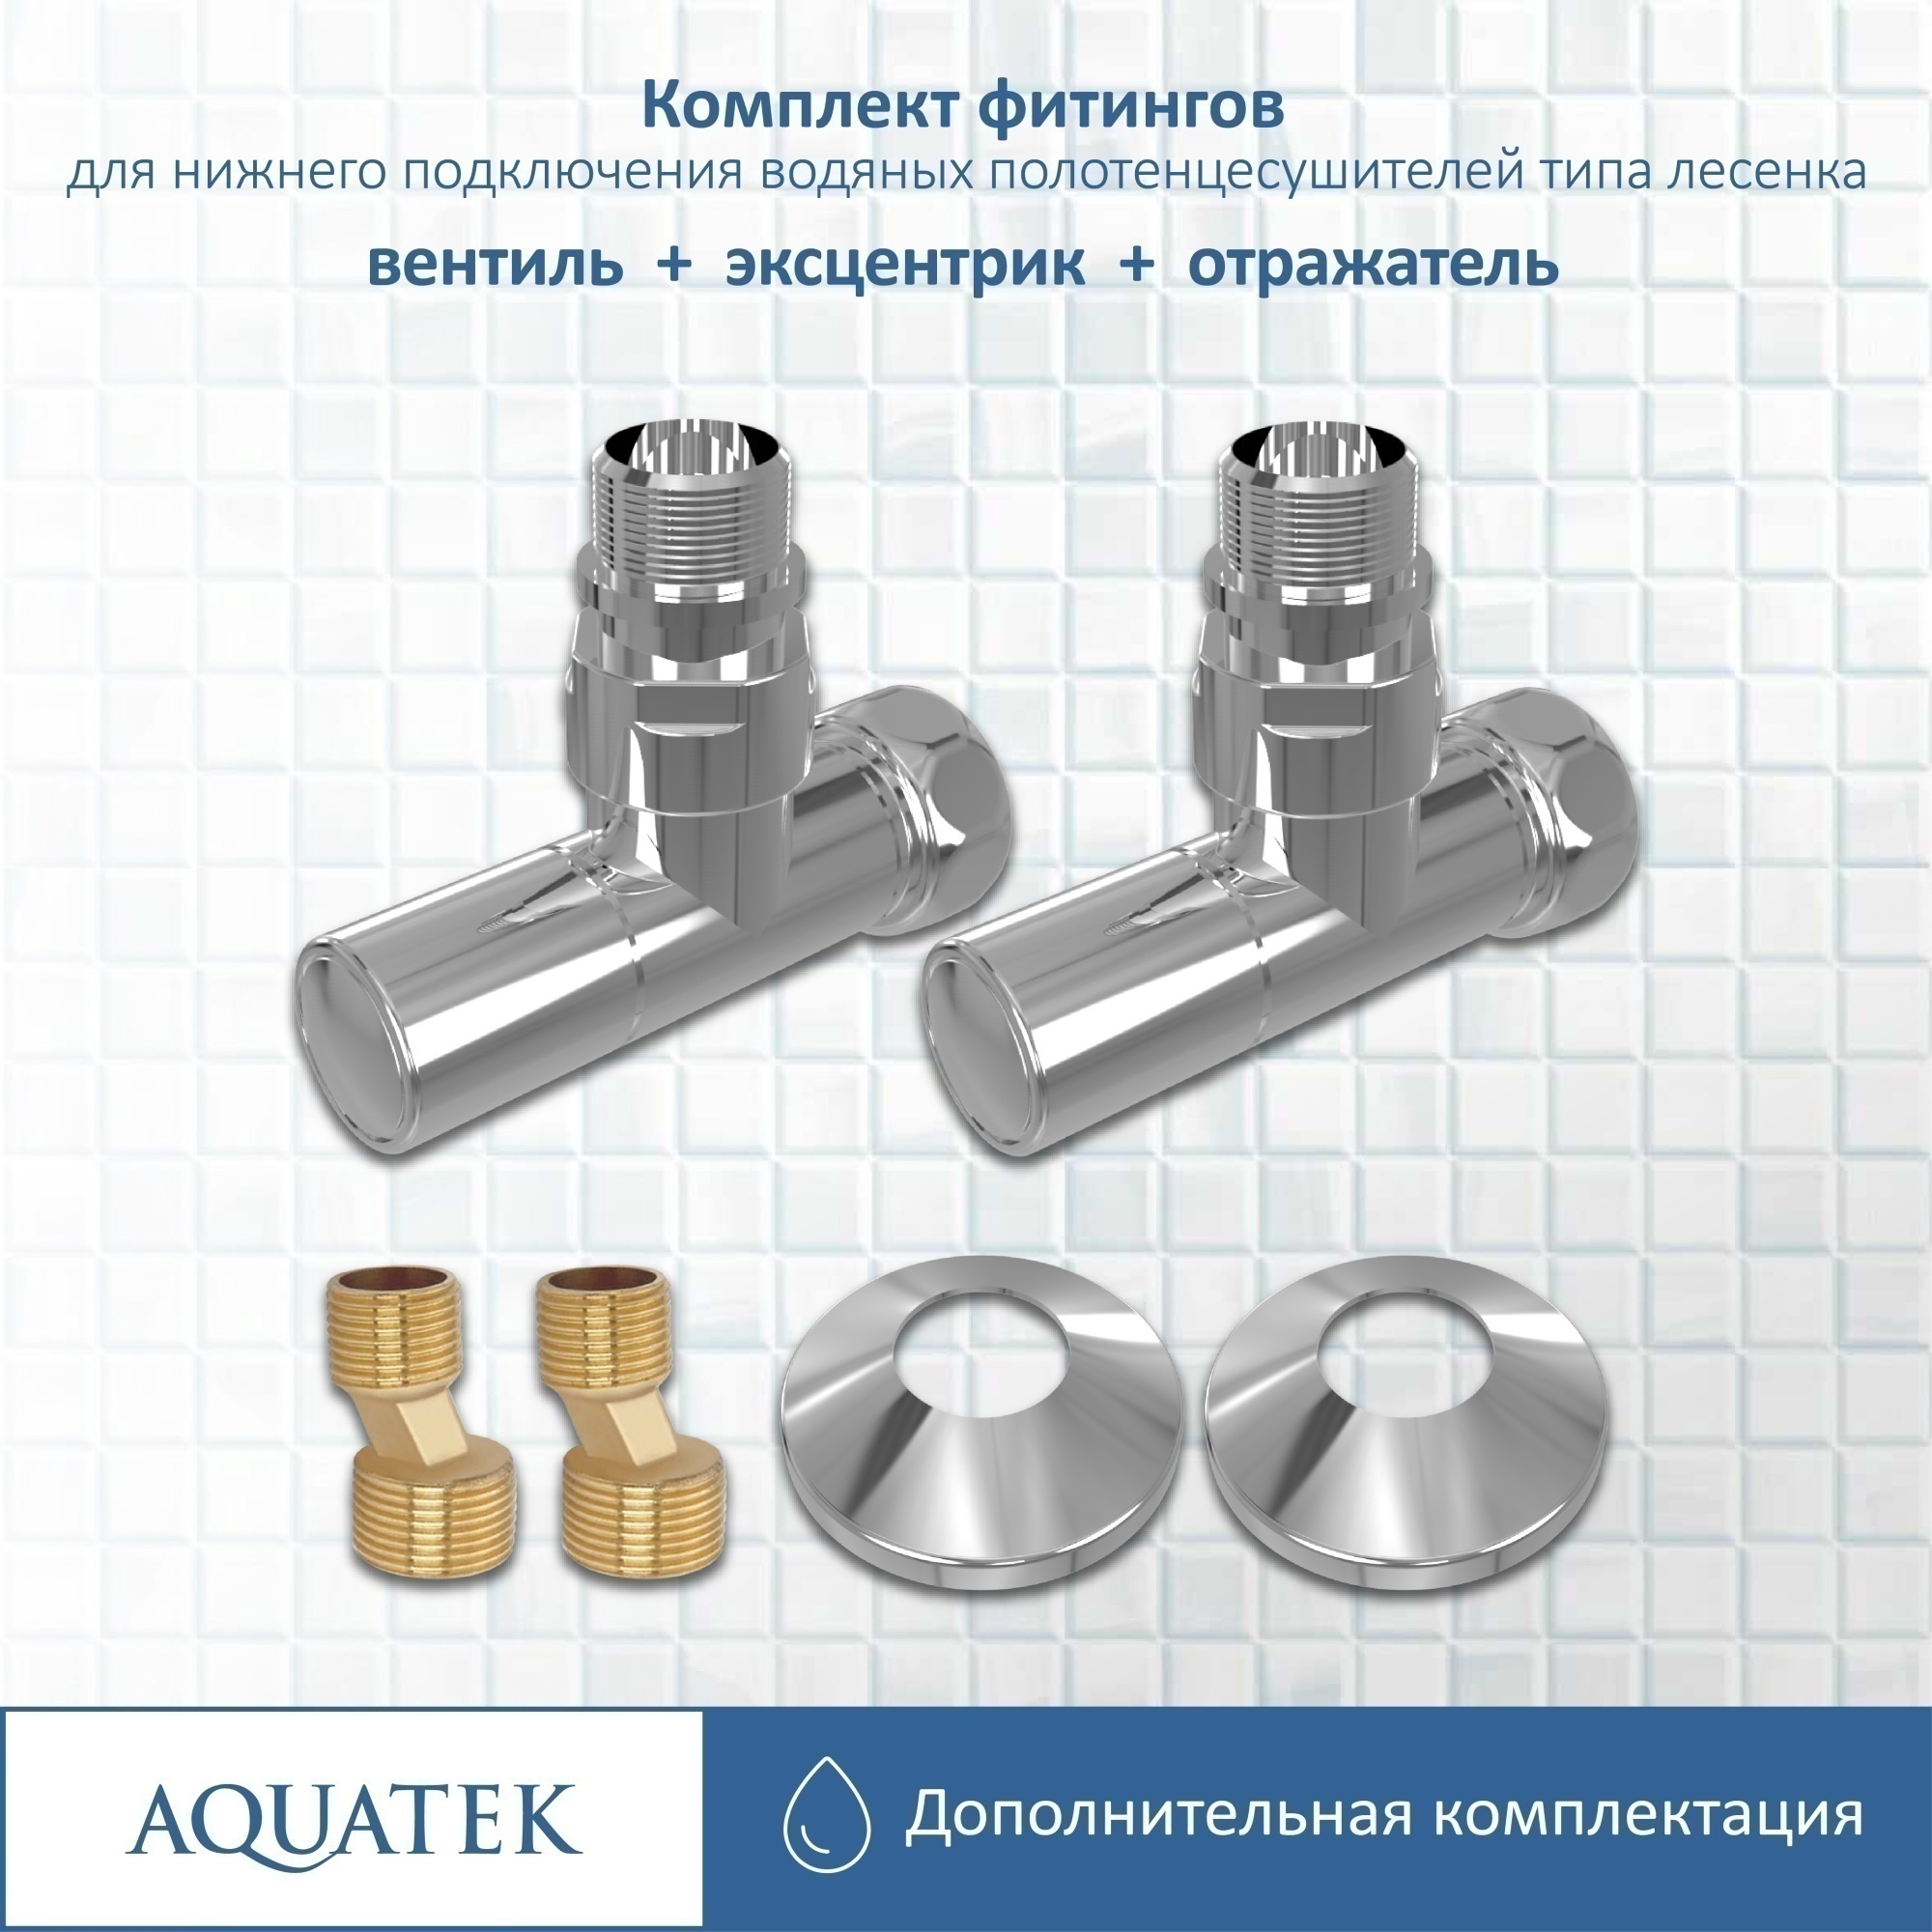 Комплект фитингов для нижнего подключения водяных полотенцесушителей Aquatek AQ 1020CH